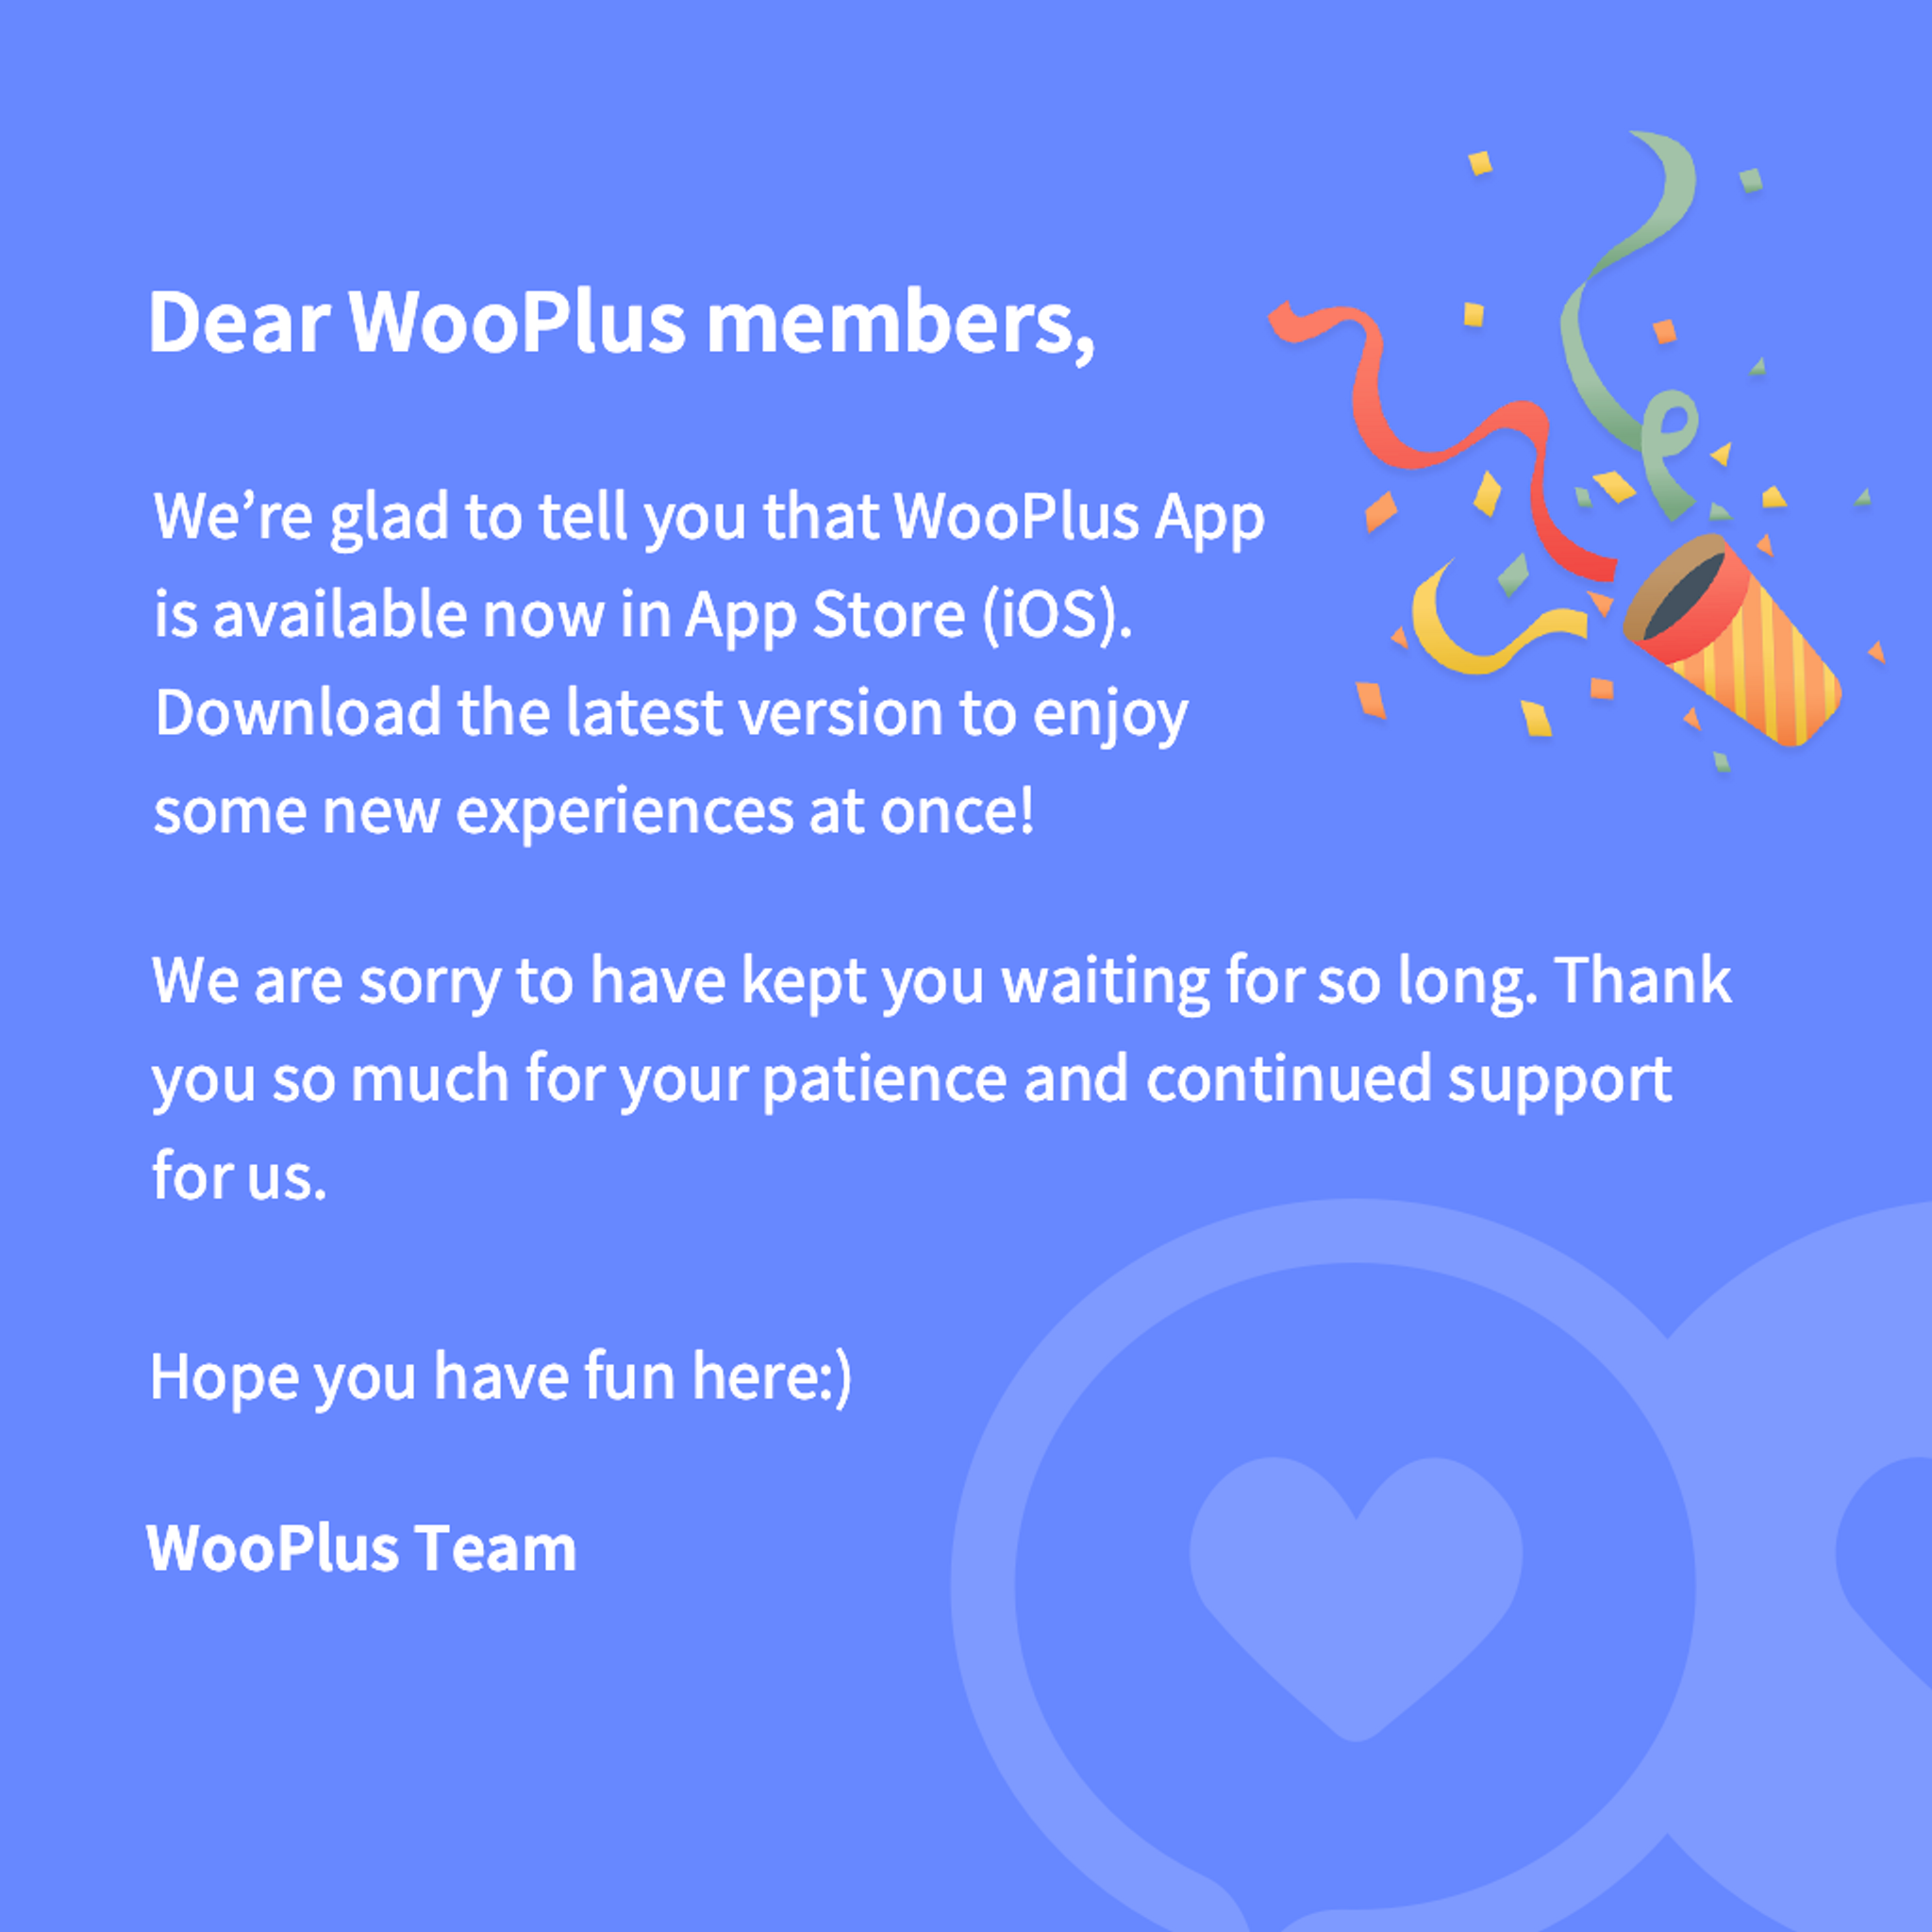 wooplus-dating-app